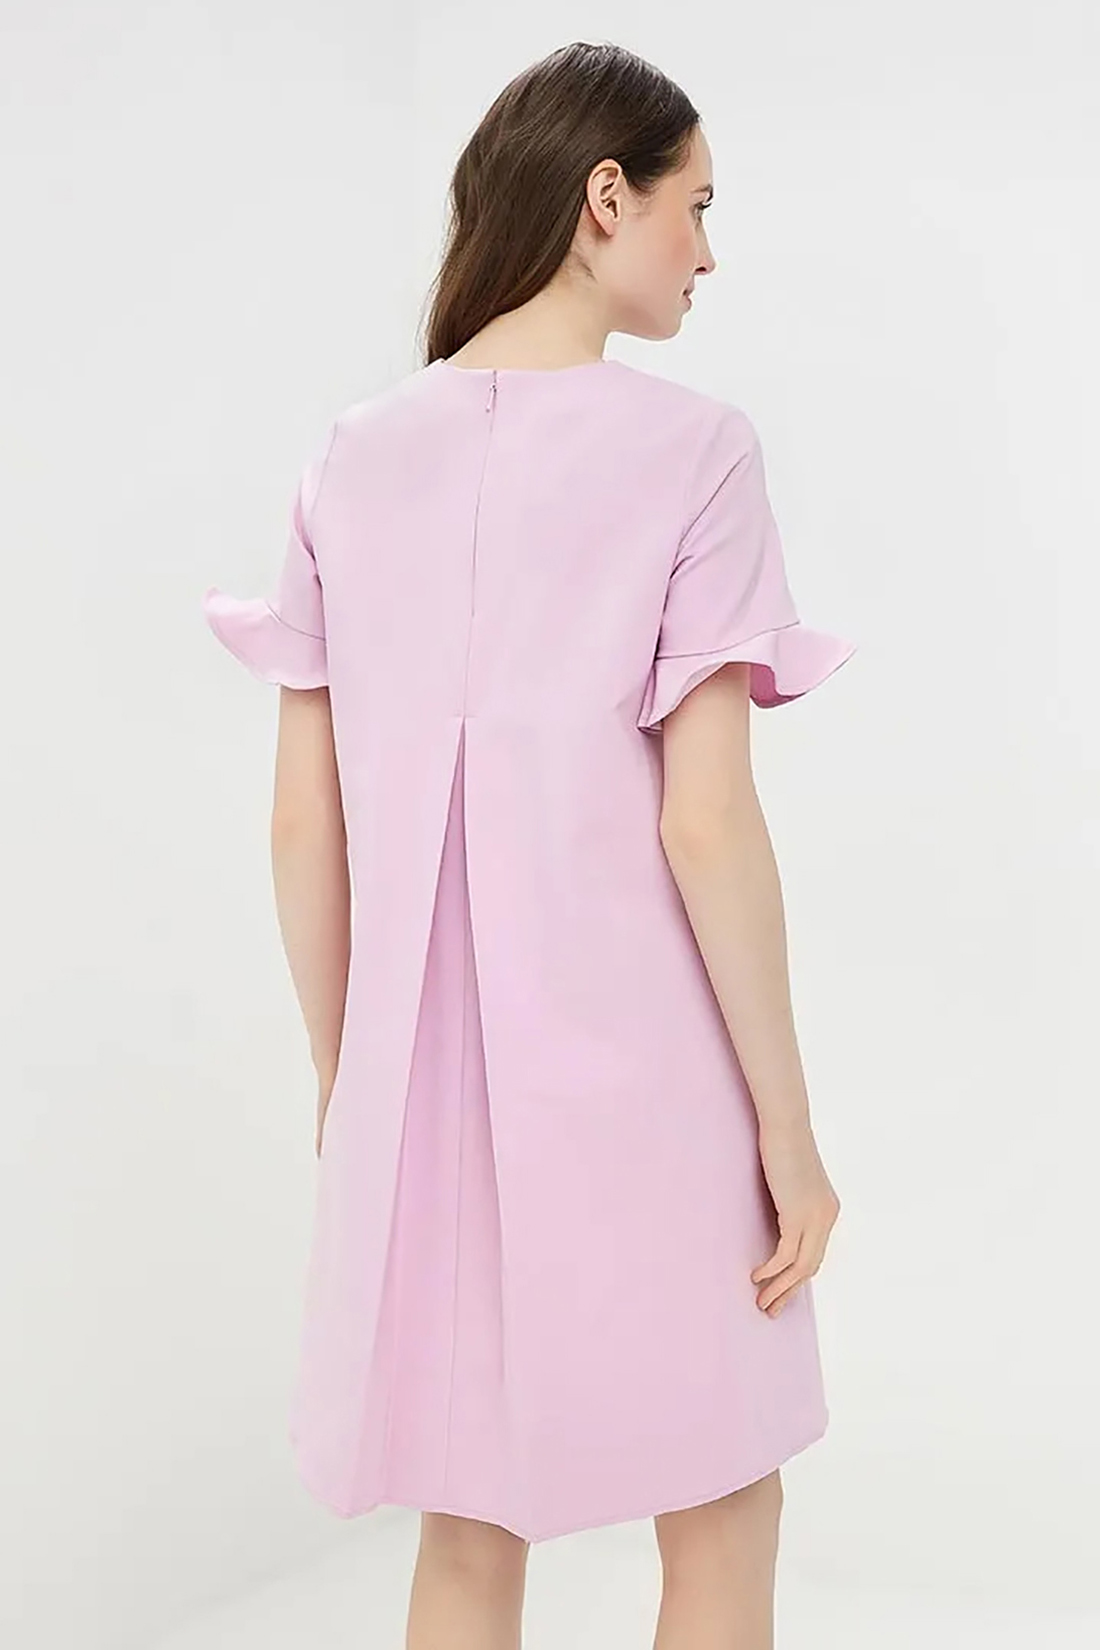 Платье с рюшами и бантовой складкой (арт. baon B459018), размер XL, цвет фиолетовый Платье с рюшами и бантовой складкой (арт. baon B459018) - фото 2